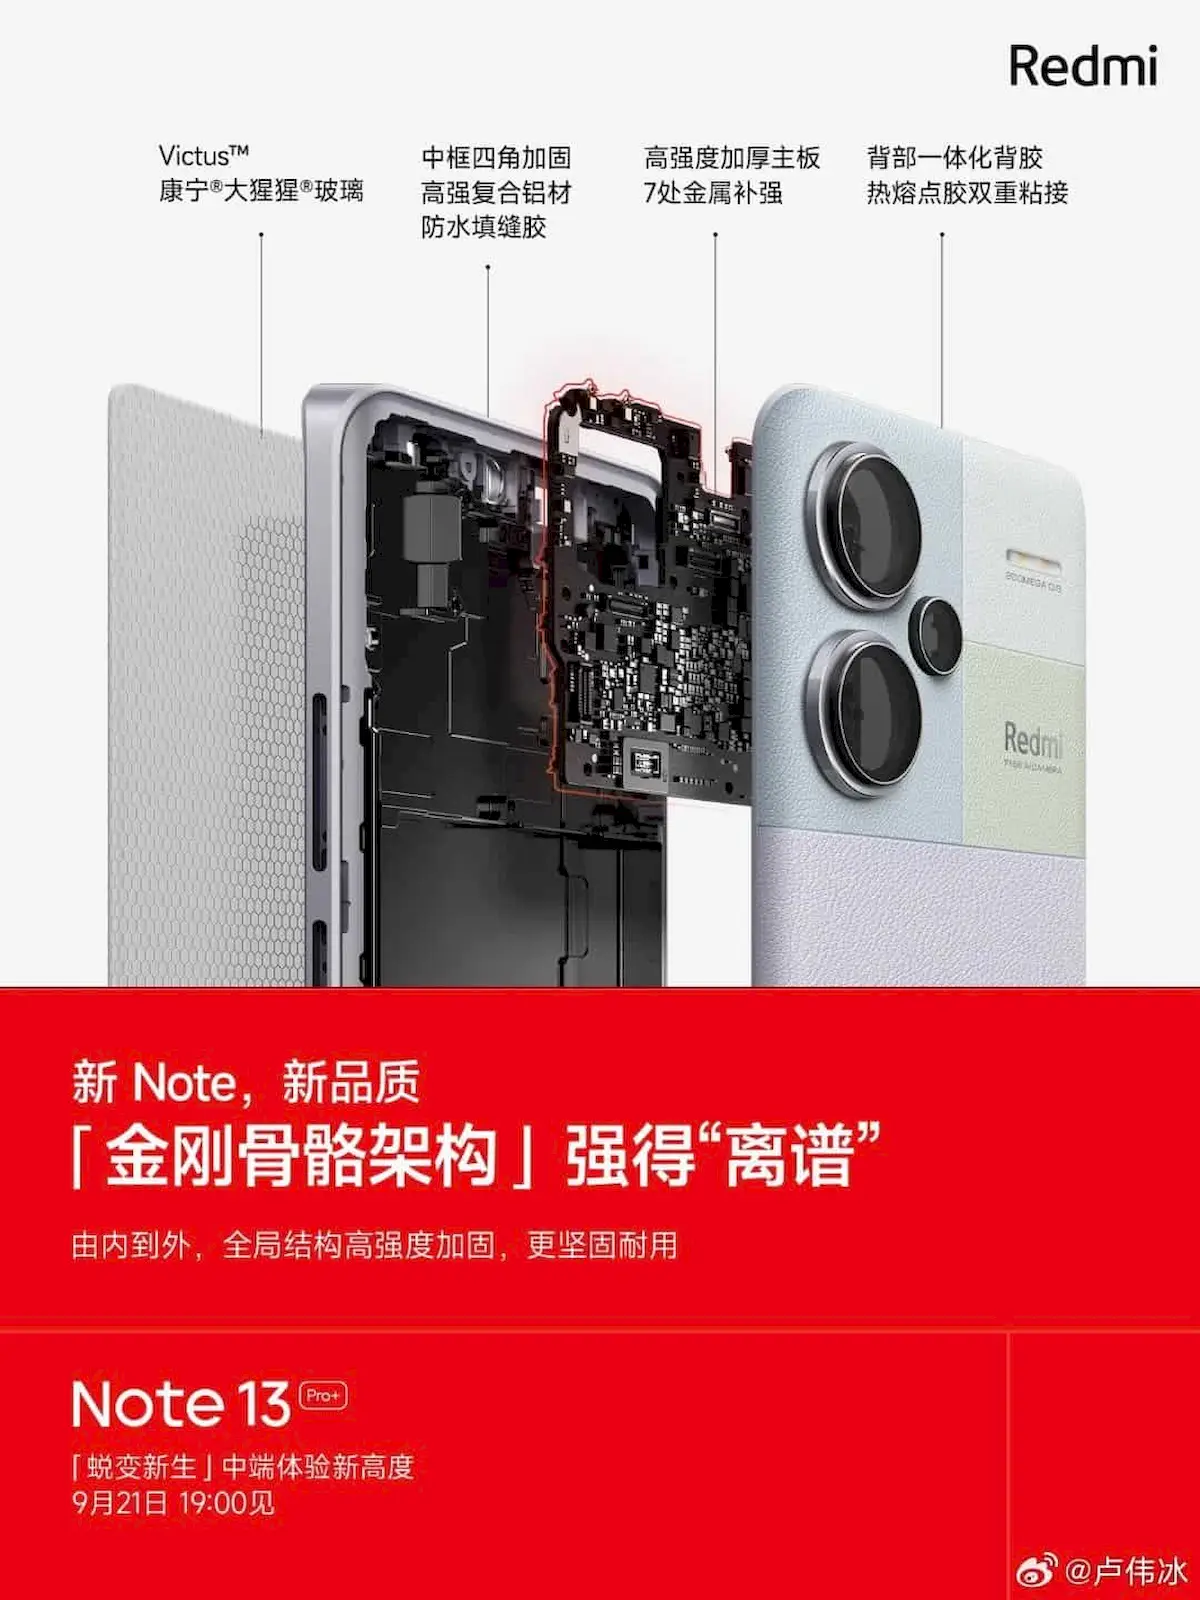 Redmi Note 13 Pro+ será o primeiro da série com proteção IP68